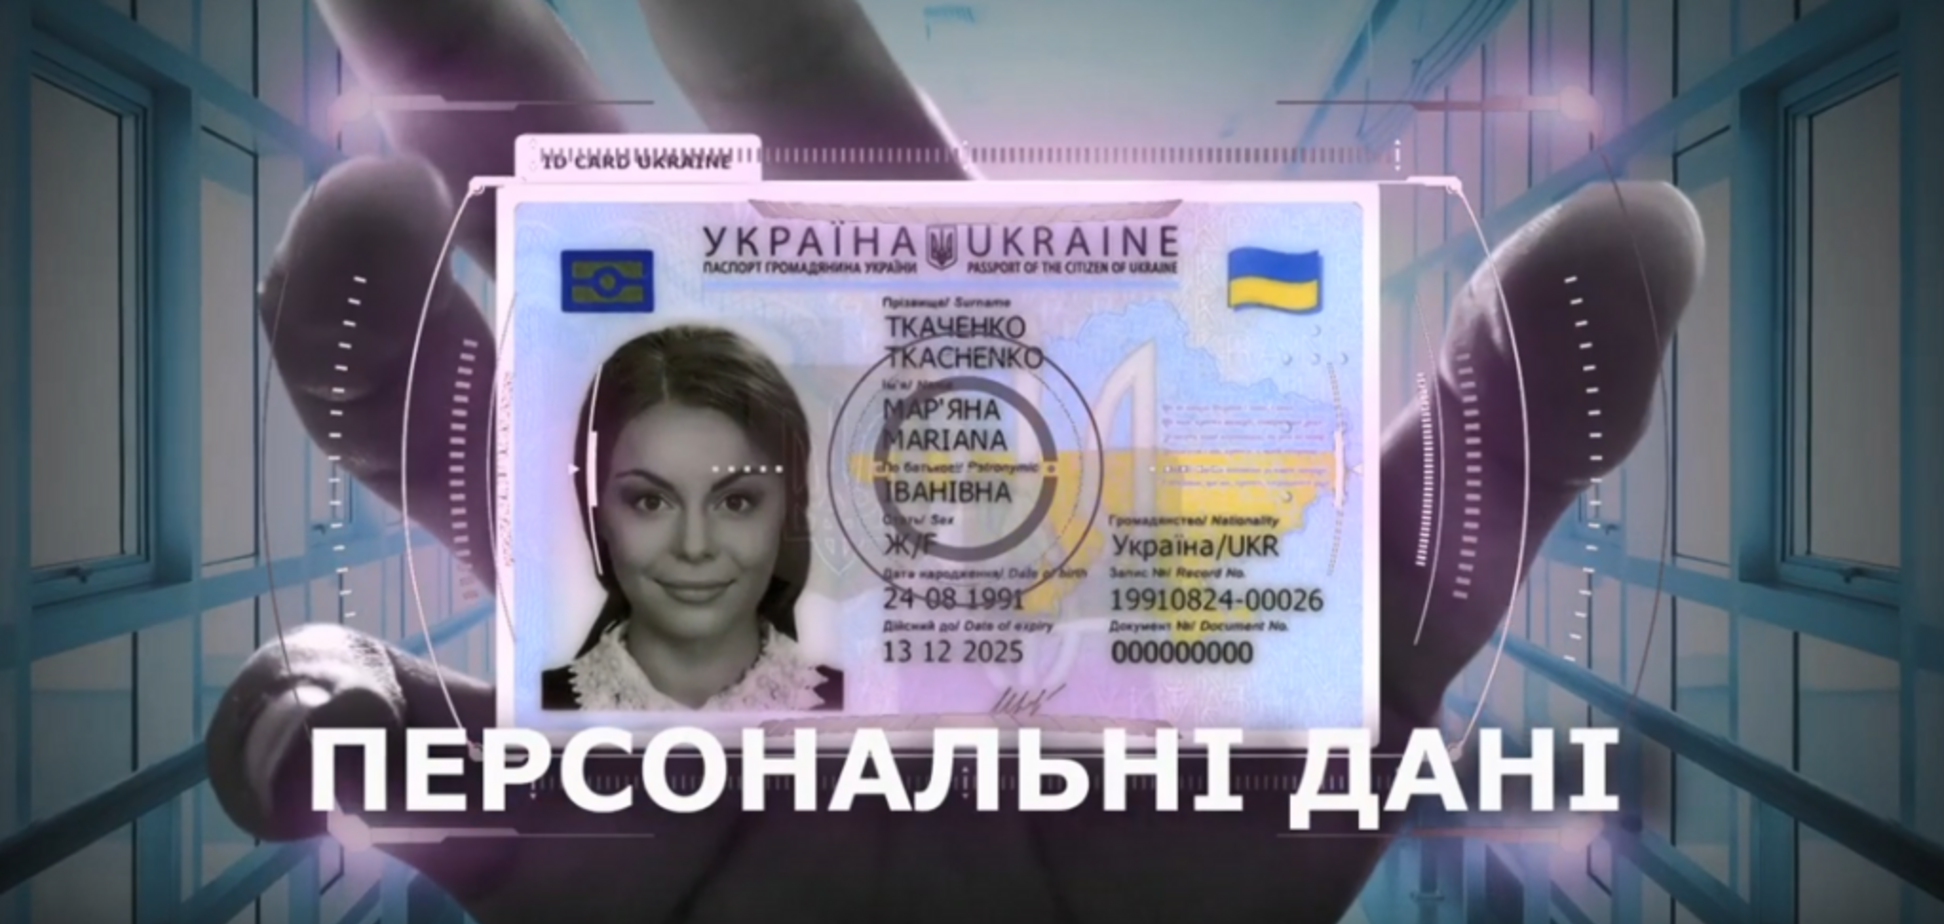 Компанія часів Януковича друкуватиме паспорти українцям: всі деталі розслідування